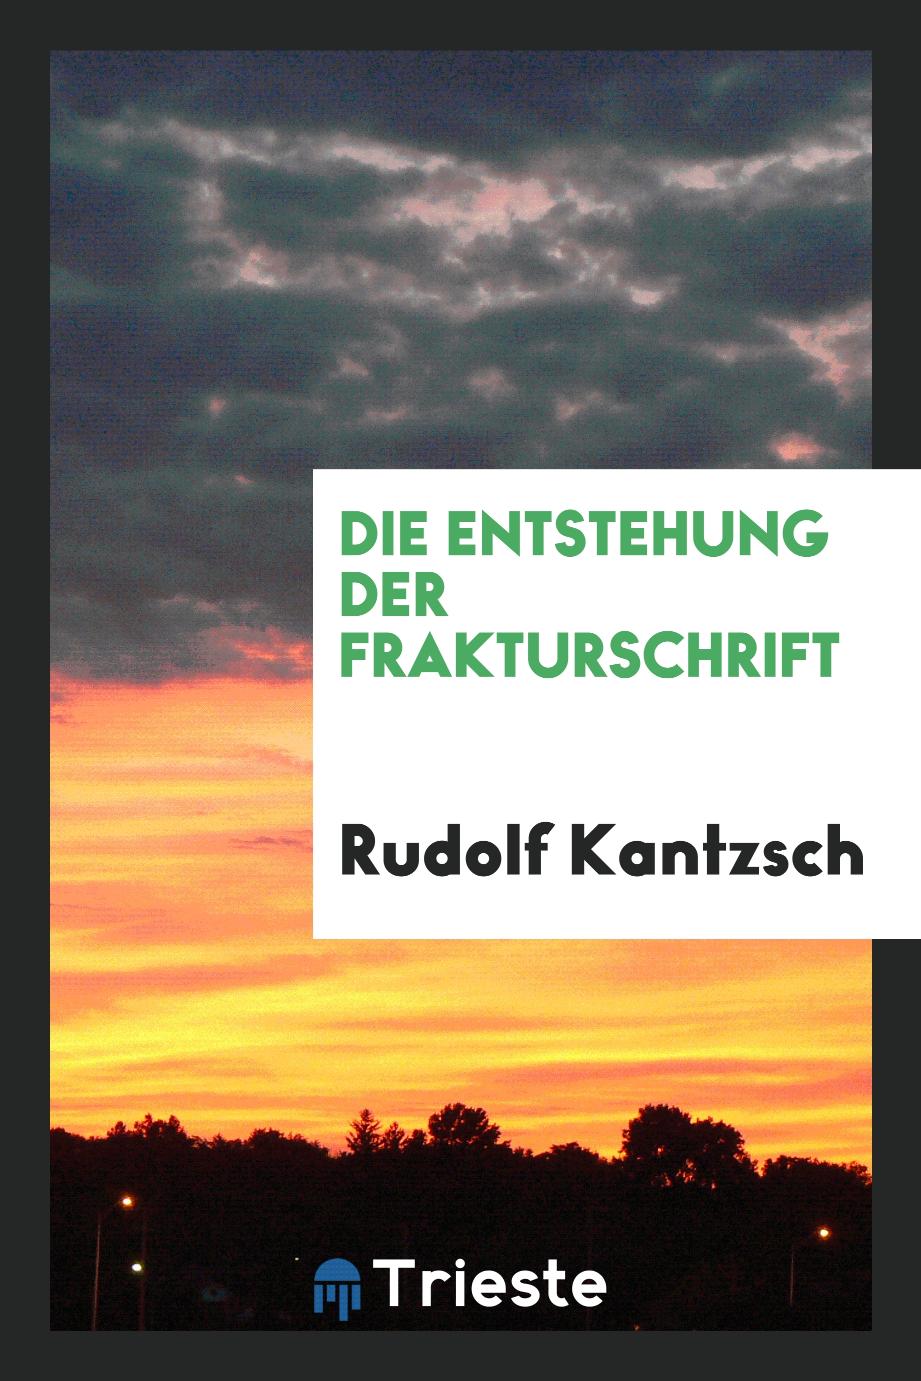 Rudolf Kantzsch - Die Entstehung der Frakturschrift